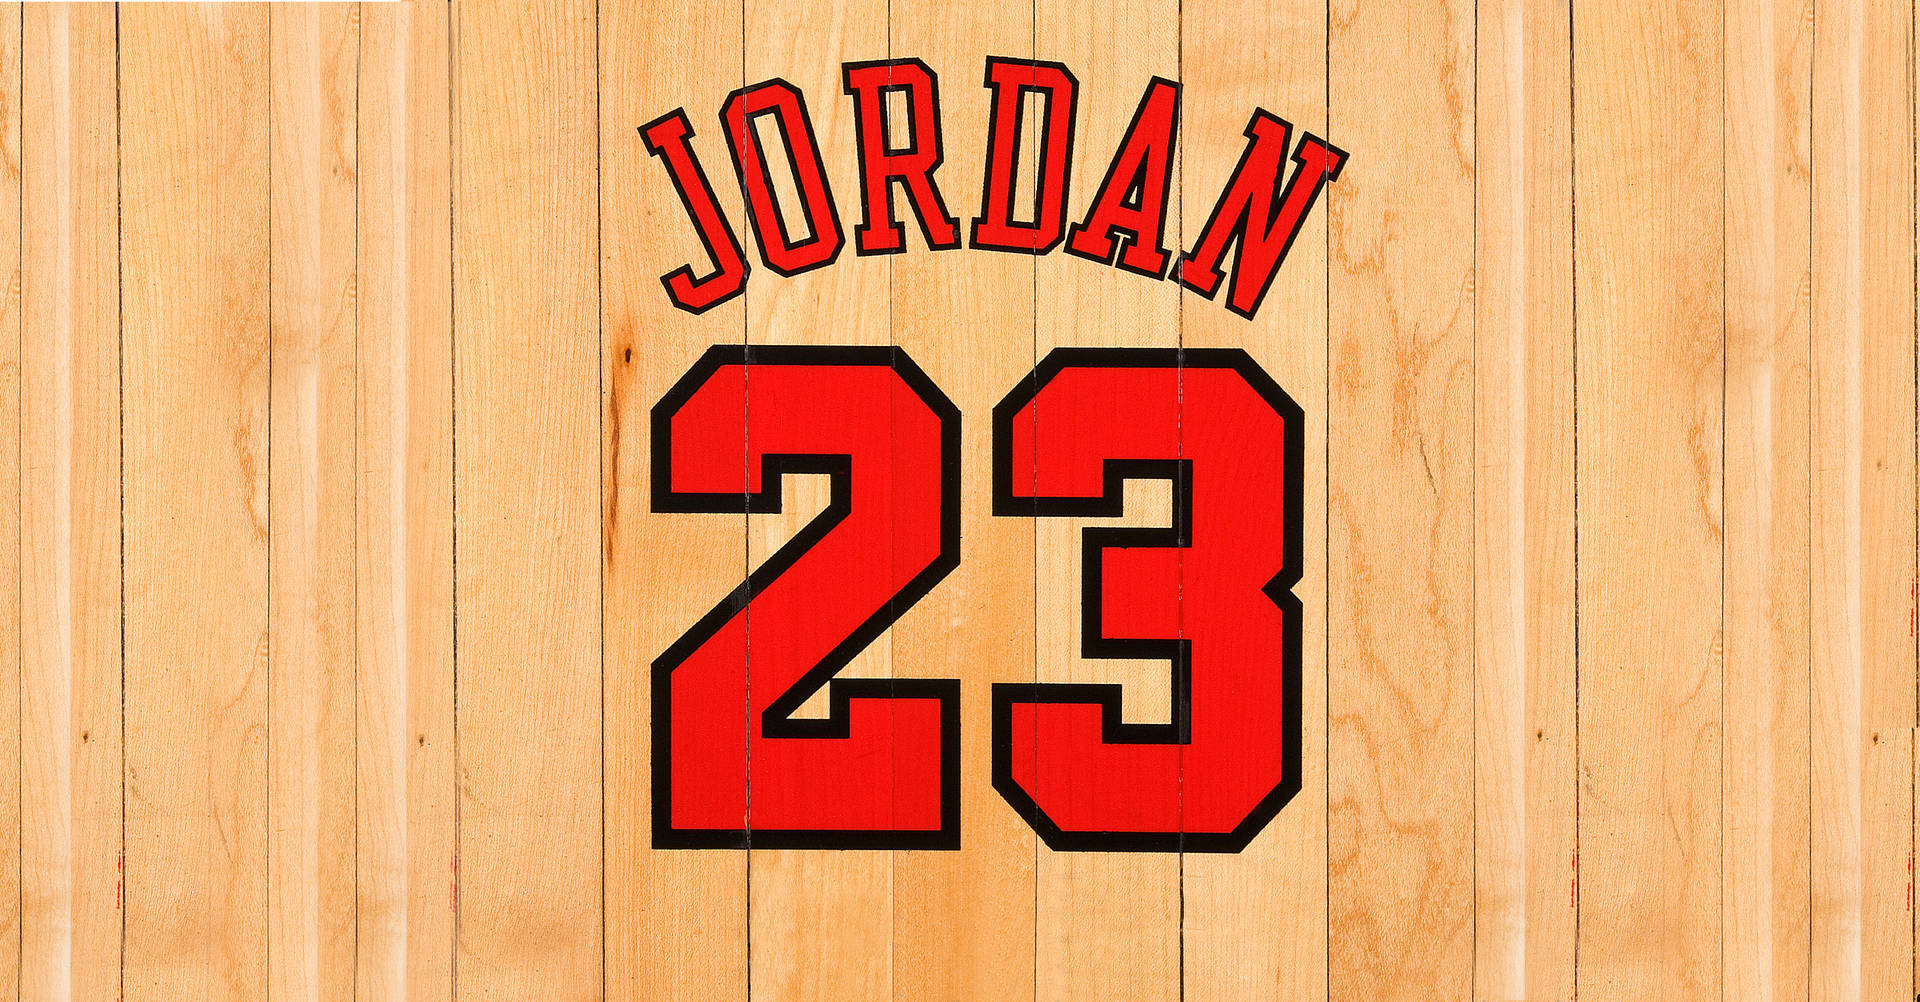 Top 999+ Michael Jordan Wallpaper Full HD, 4K✅Free to Use